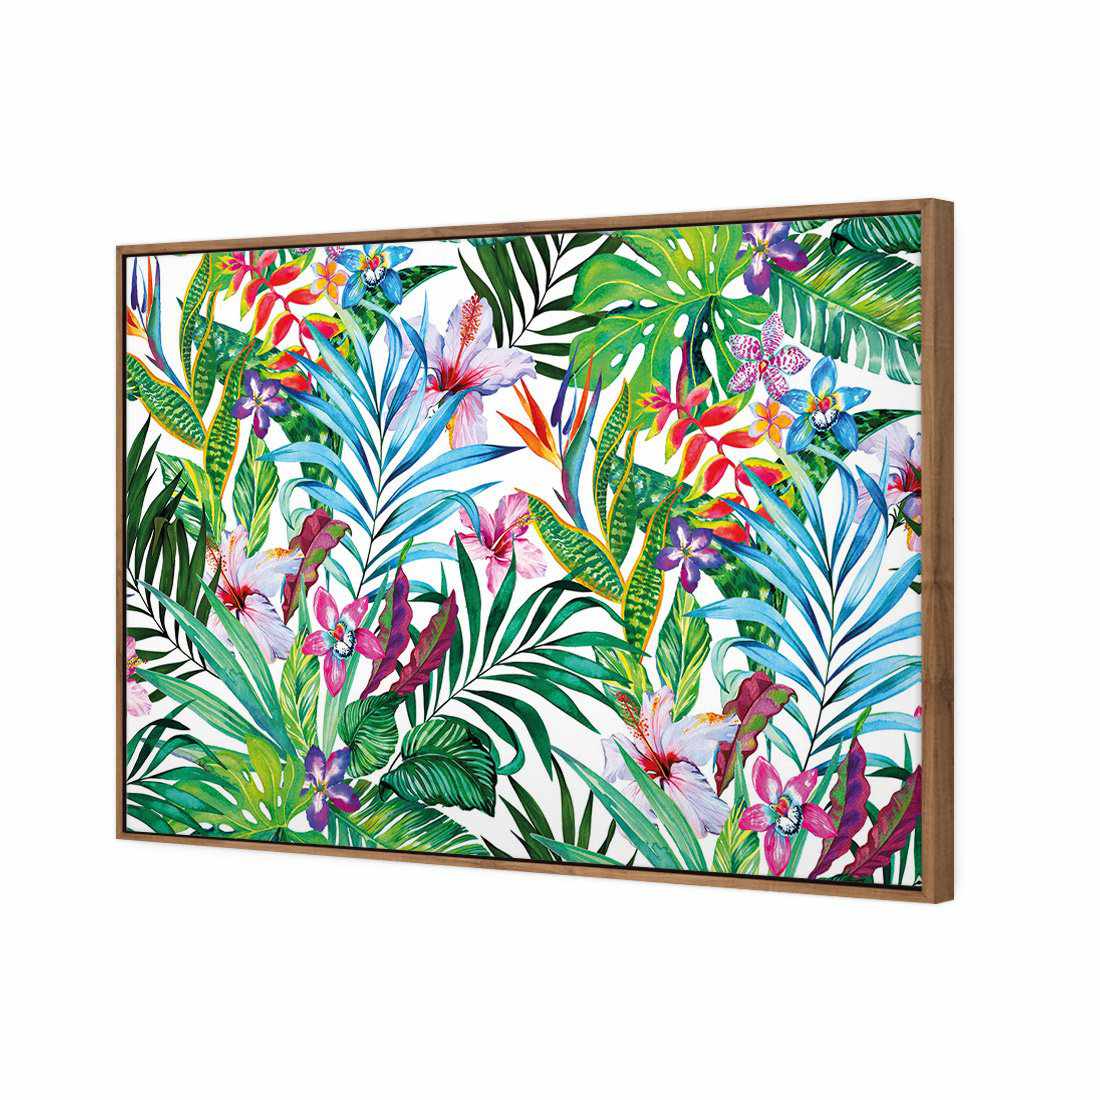 Jungle At Noon Canvas Art-Canvas-Wall Art Designs-45x30cm-Canvas - Natural Frame-Wall Art Designs